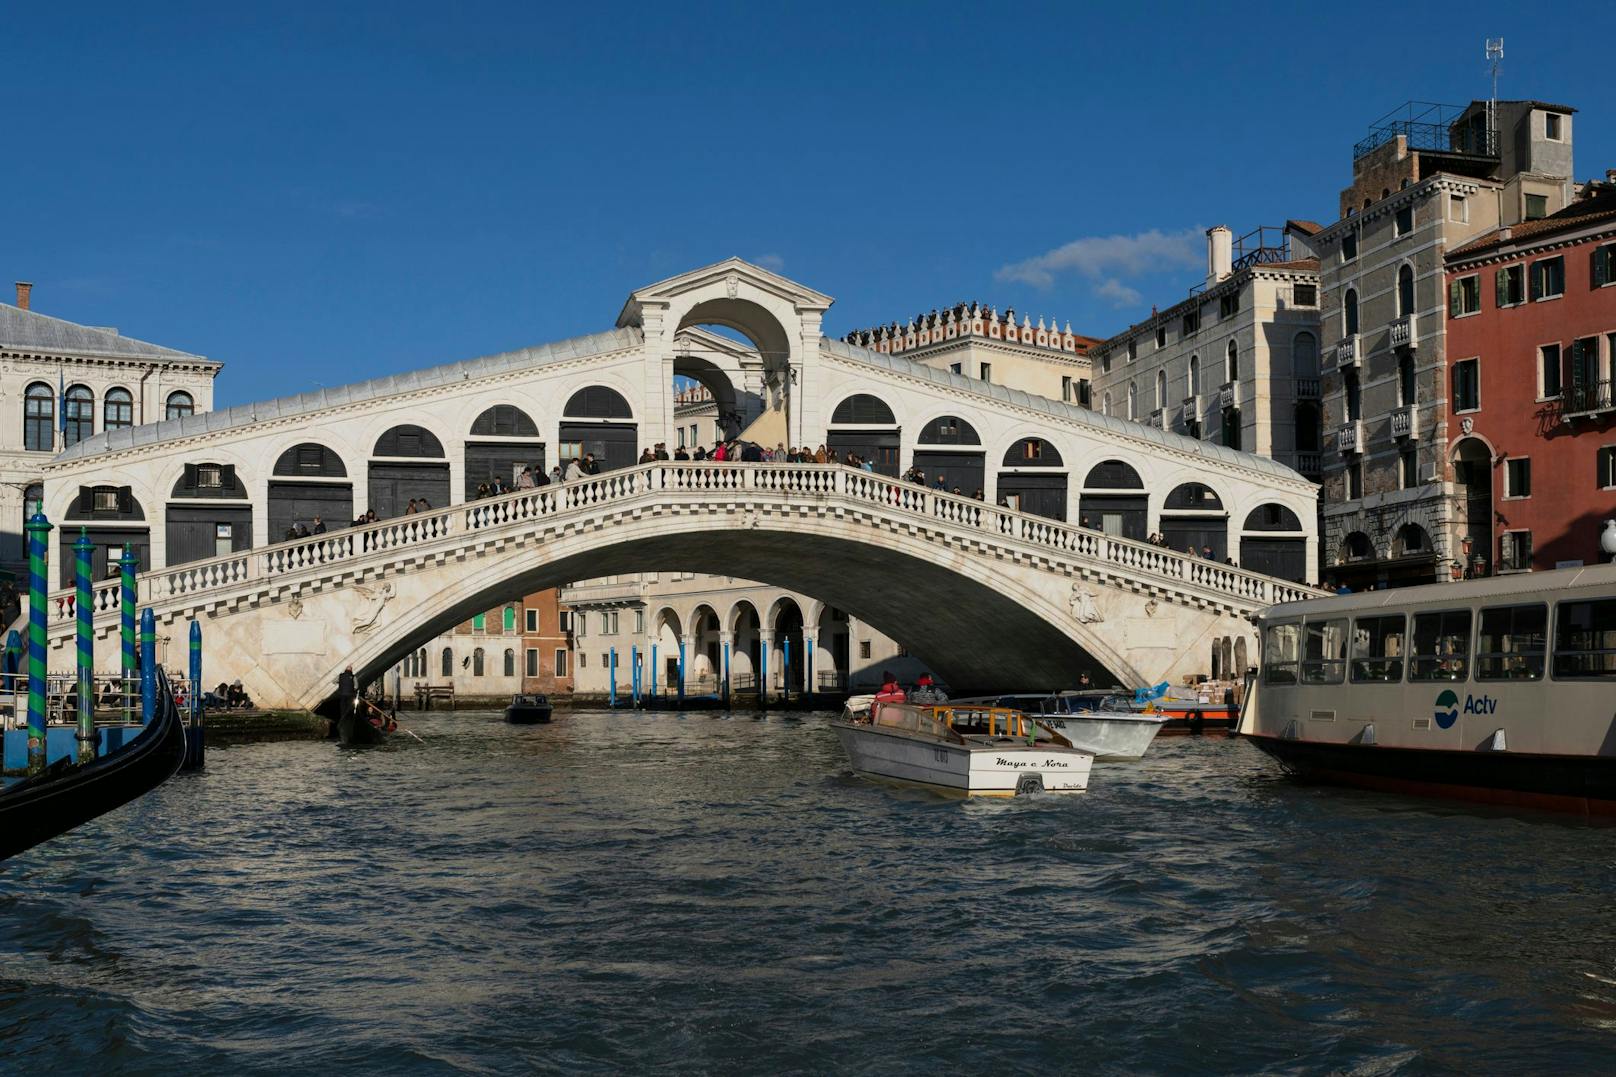 19. Rialto Brücke in Venedig